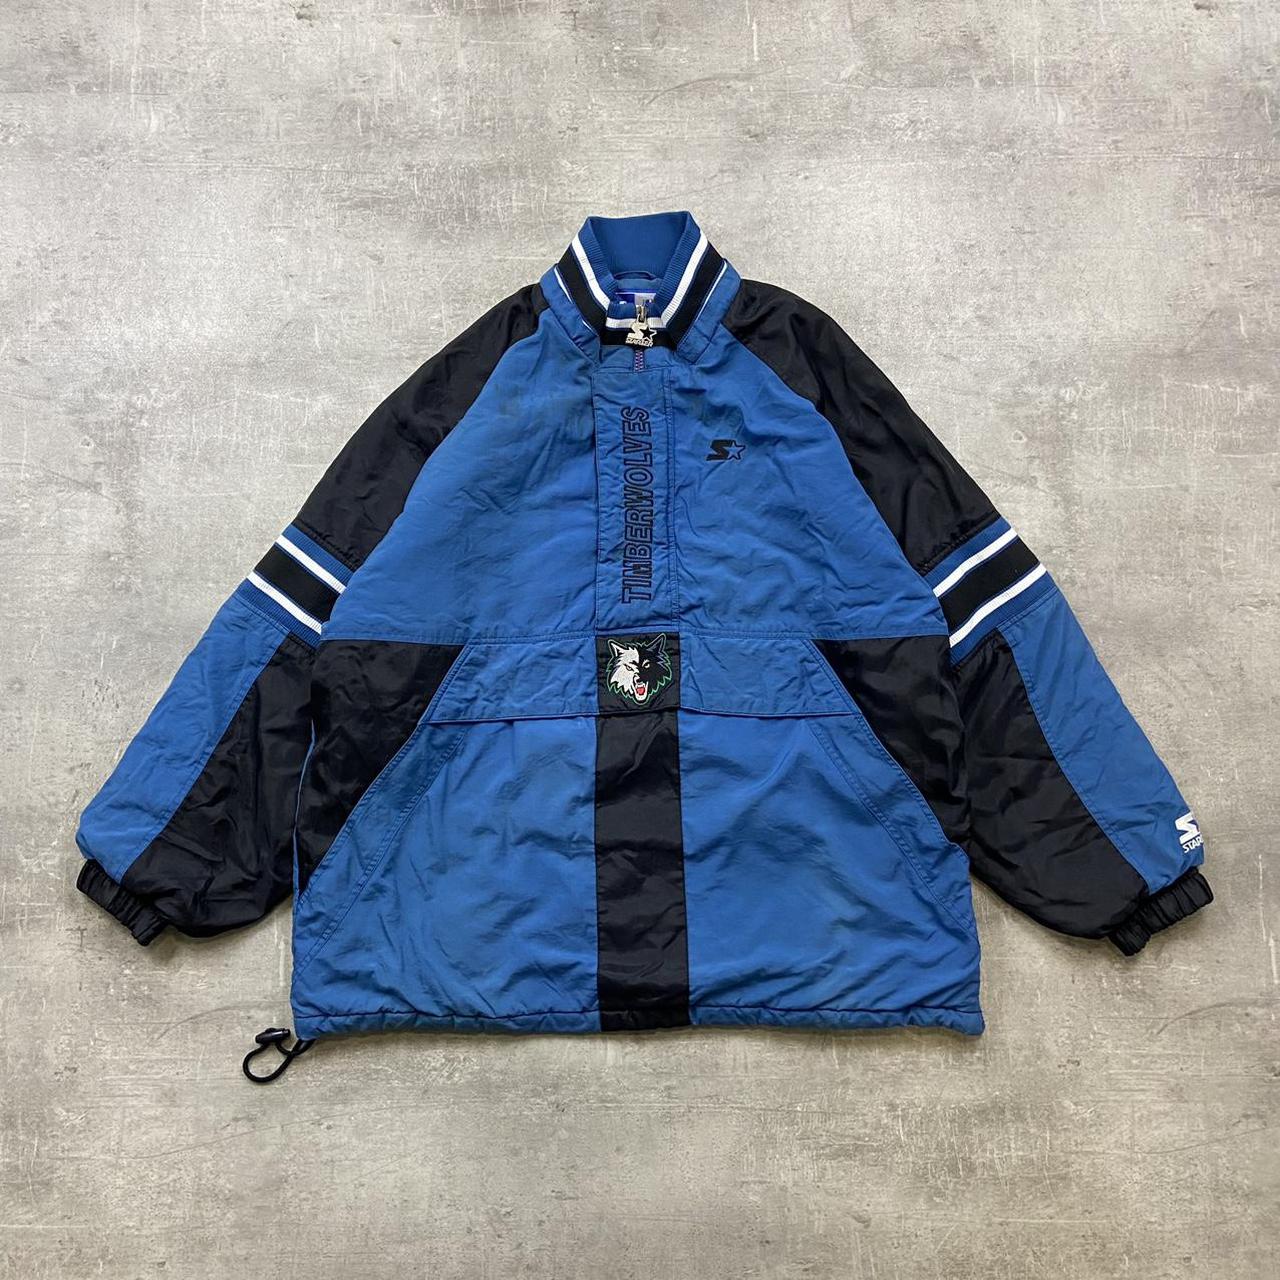 Vintage 90’s nba starter quarter zip jacket in blue... - Depop